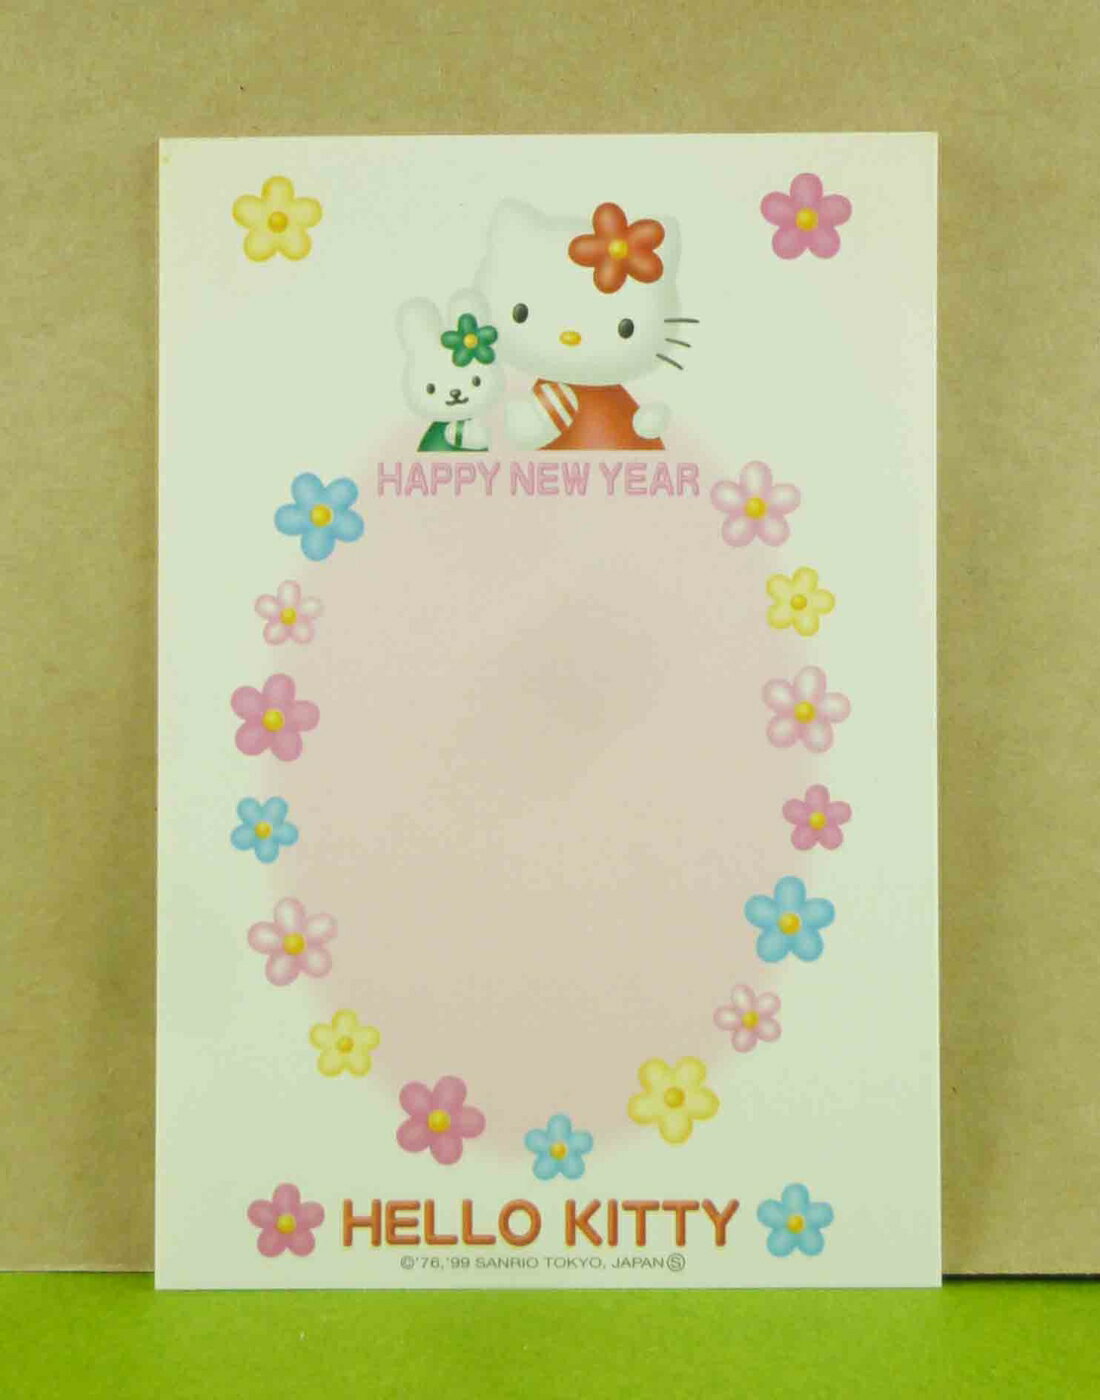 【震撼精品百貨】Hello Kitty 凱蒂貓 3入明信片-粉兔子 震撼日式精品百貨